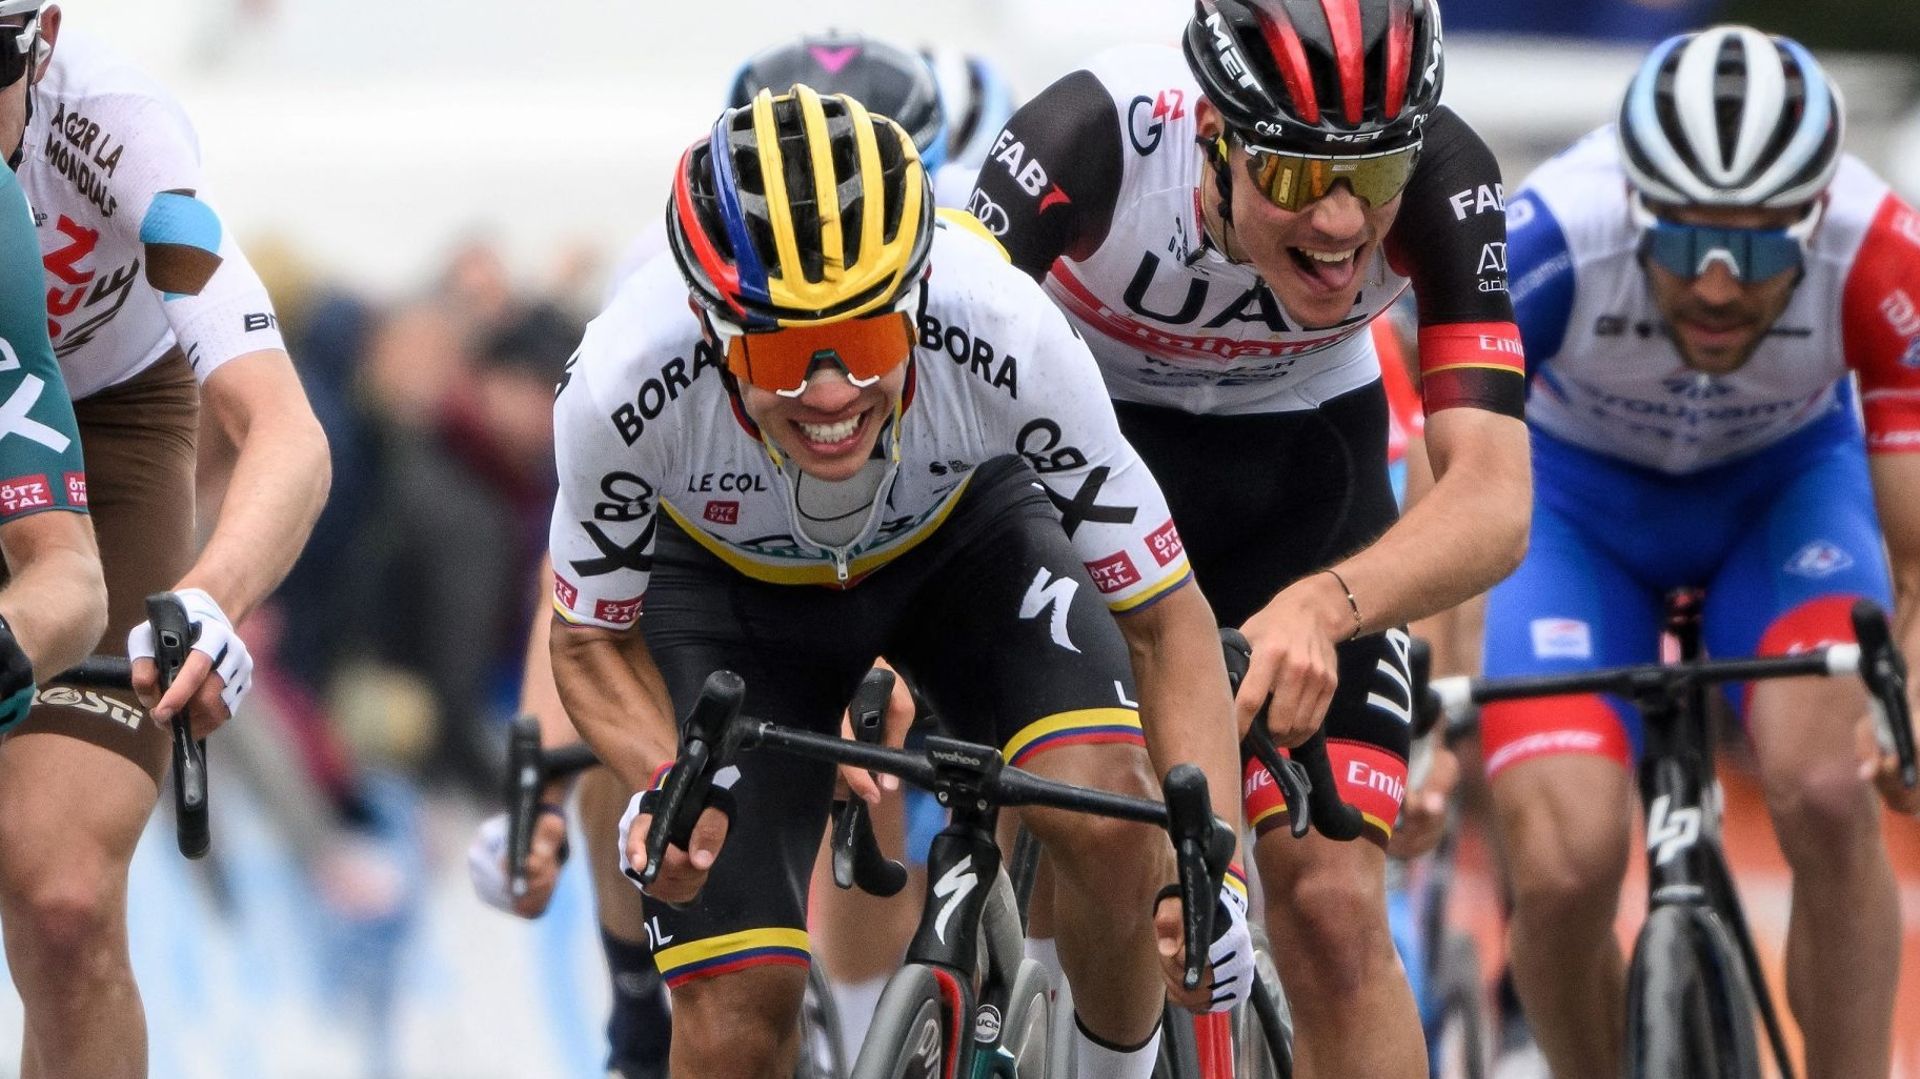 Sergio Higuita, nouveau leader du Tour de Suisse...mais pour combien de temps?